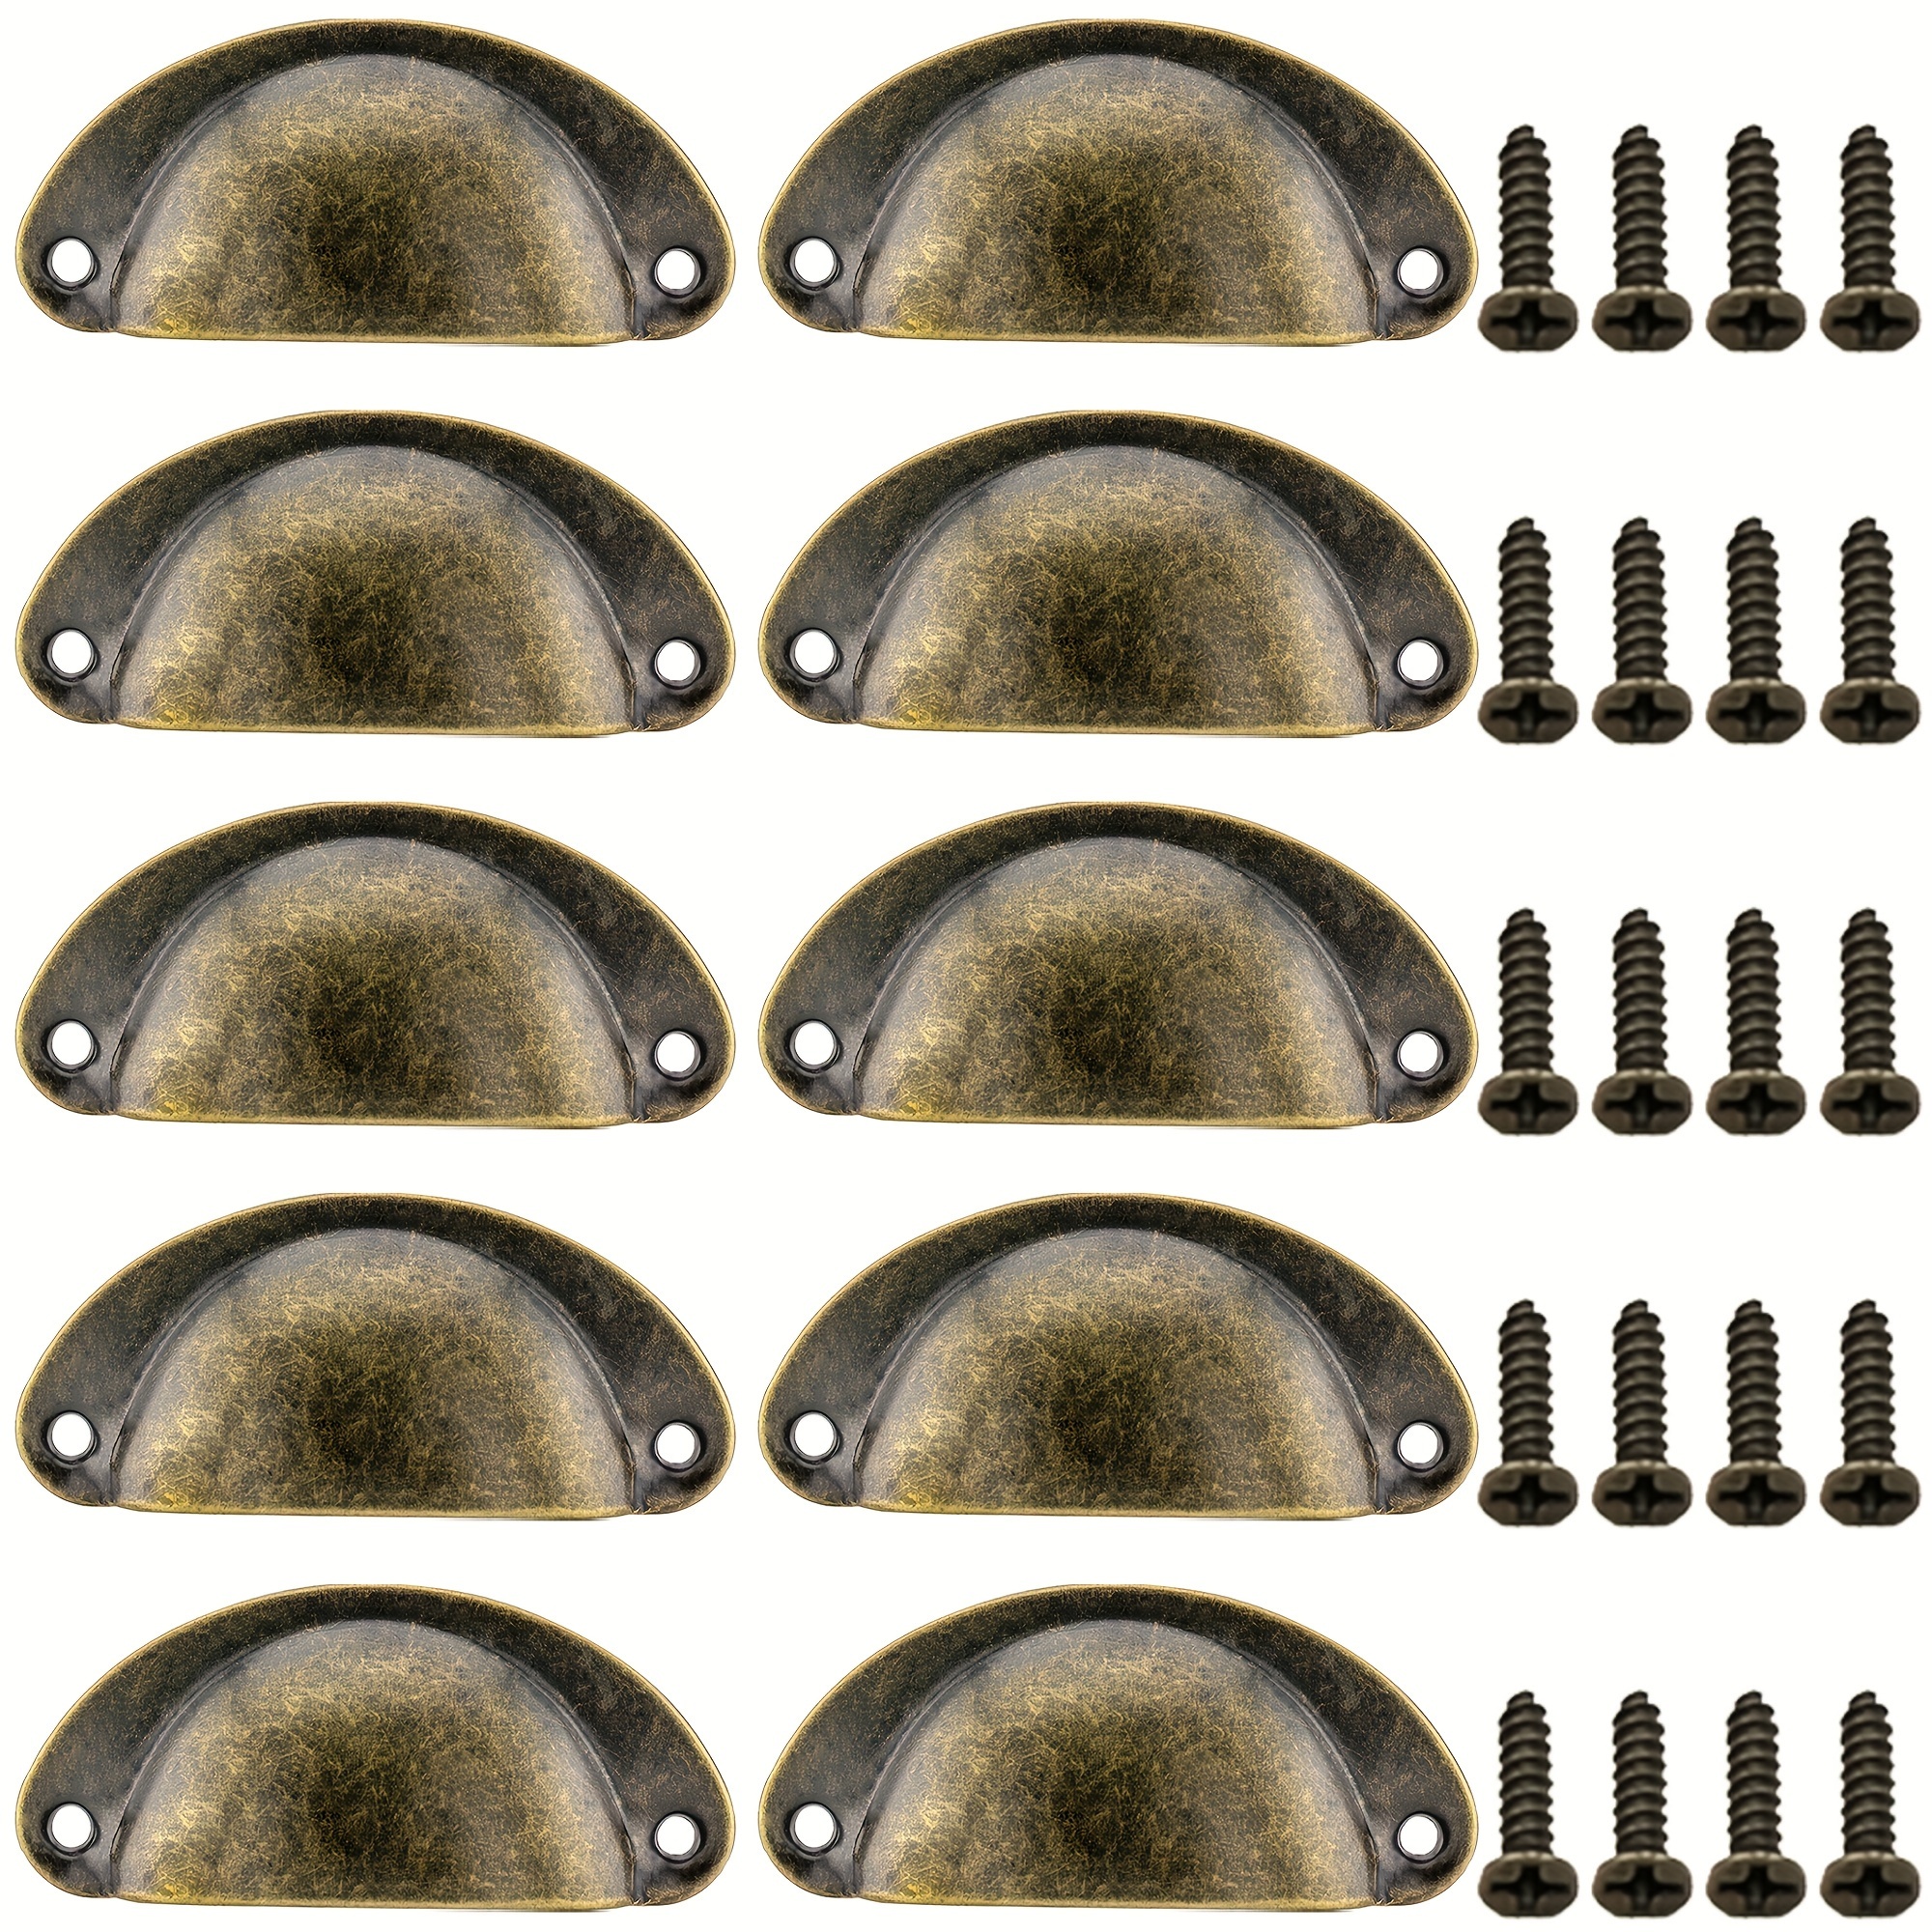 Goo-Ki Paquete de 6 tiradores vintage de cobre antiguo para gabinete, 3.78  pulgadas de centro a centro, accesorios retro sólidos para mejoras del